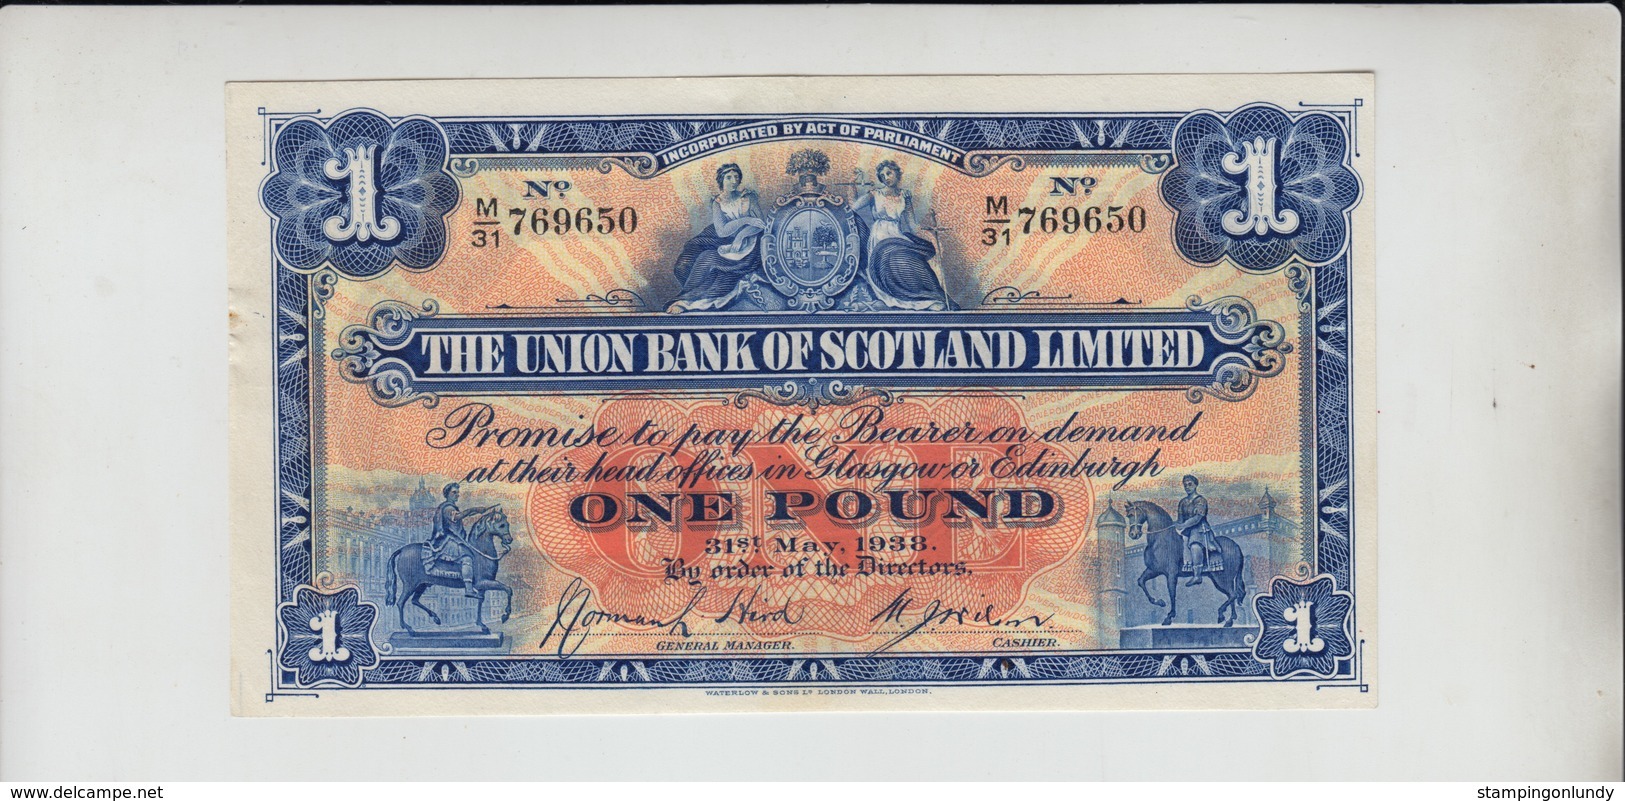 AB195. The Union Bank Of Scotland Ltd £1 Note 31st May 1938 #M/31 769650 FREE UK P+P - 1 Pound